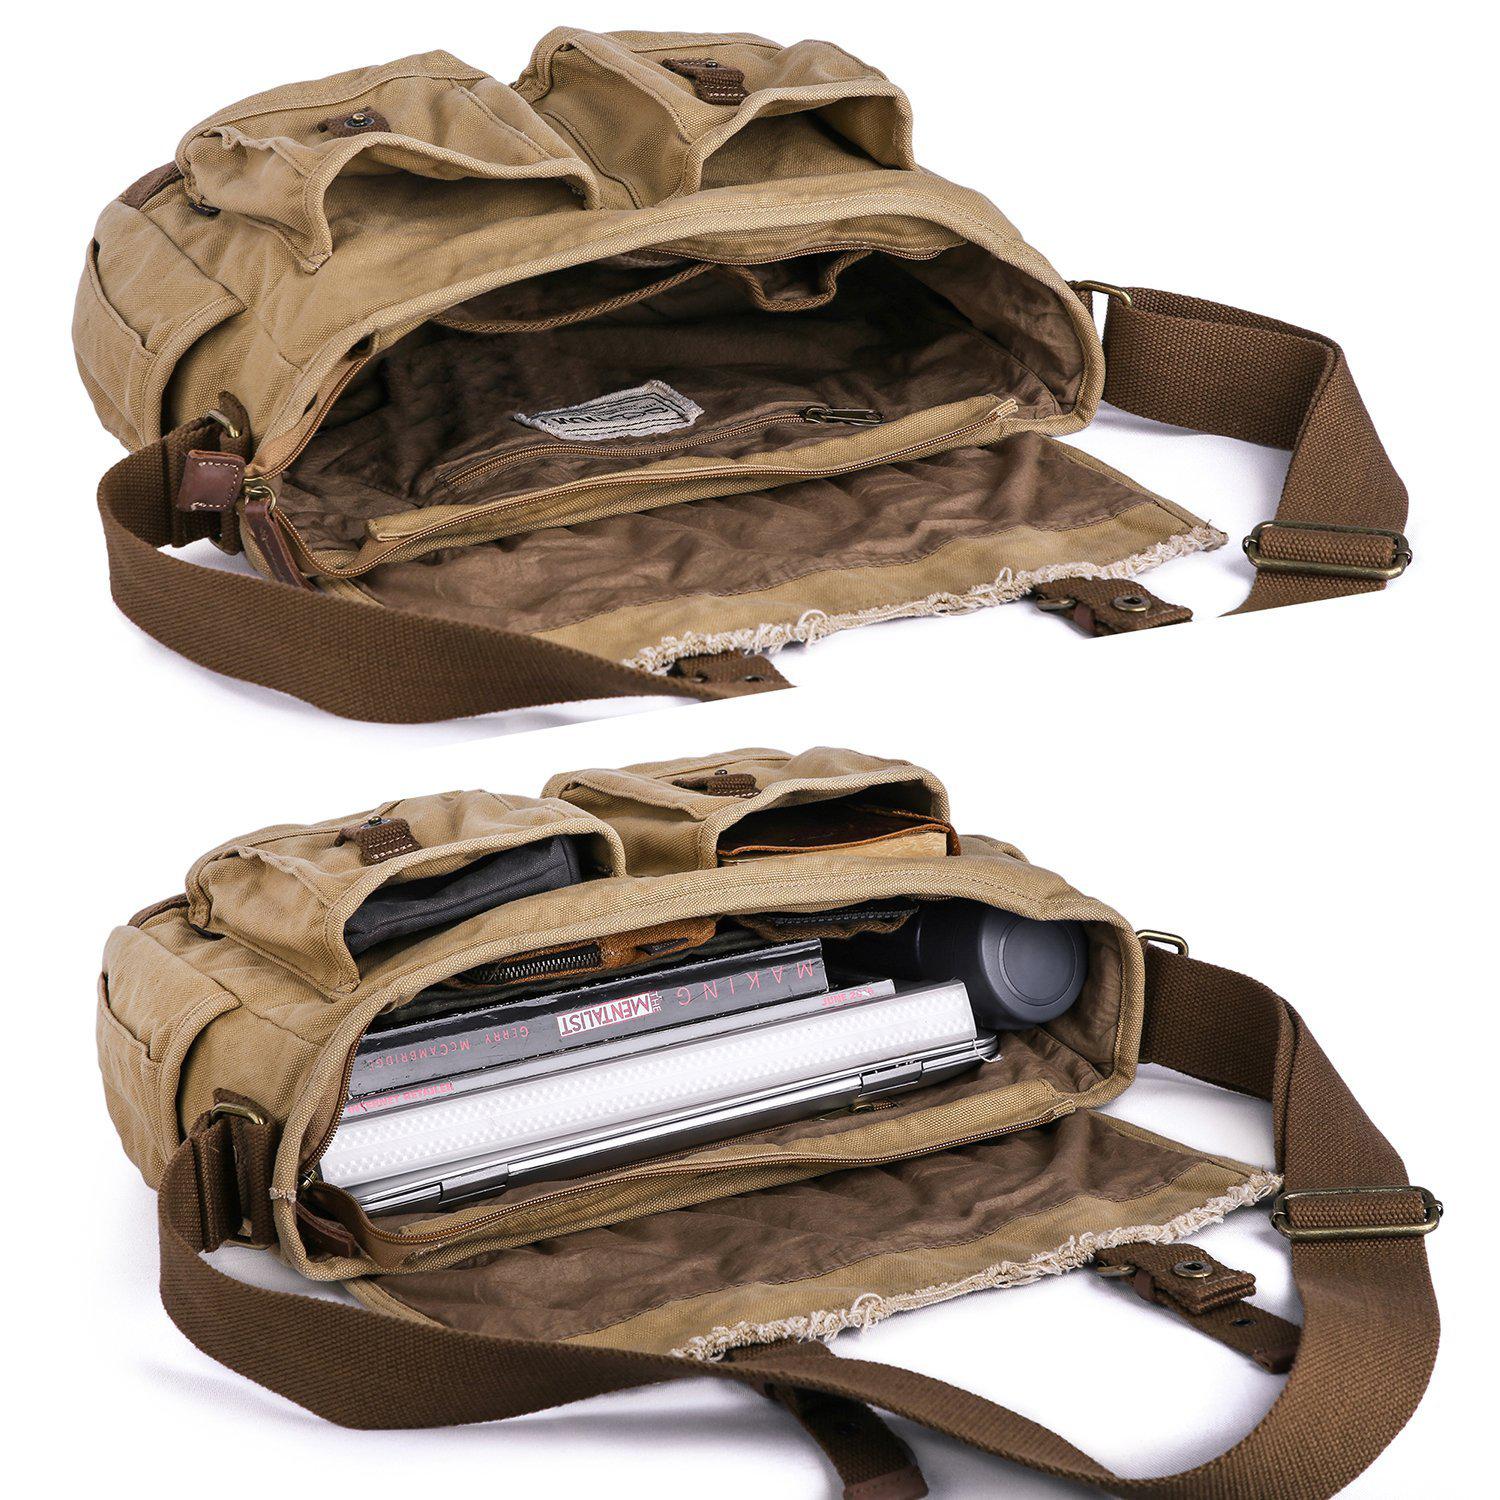 Gootium Canvas Messenger Bag - Vintage Shoulder Bag Frayed Style Boho  Satchel